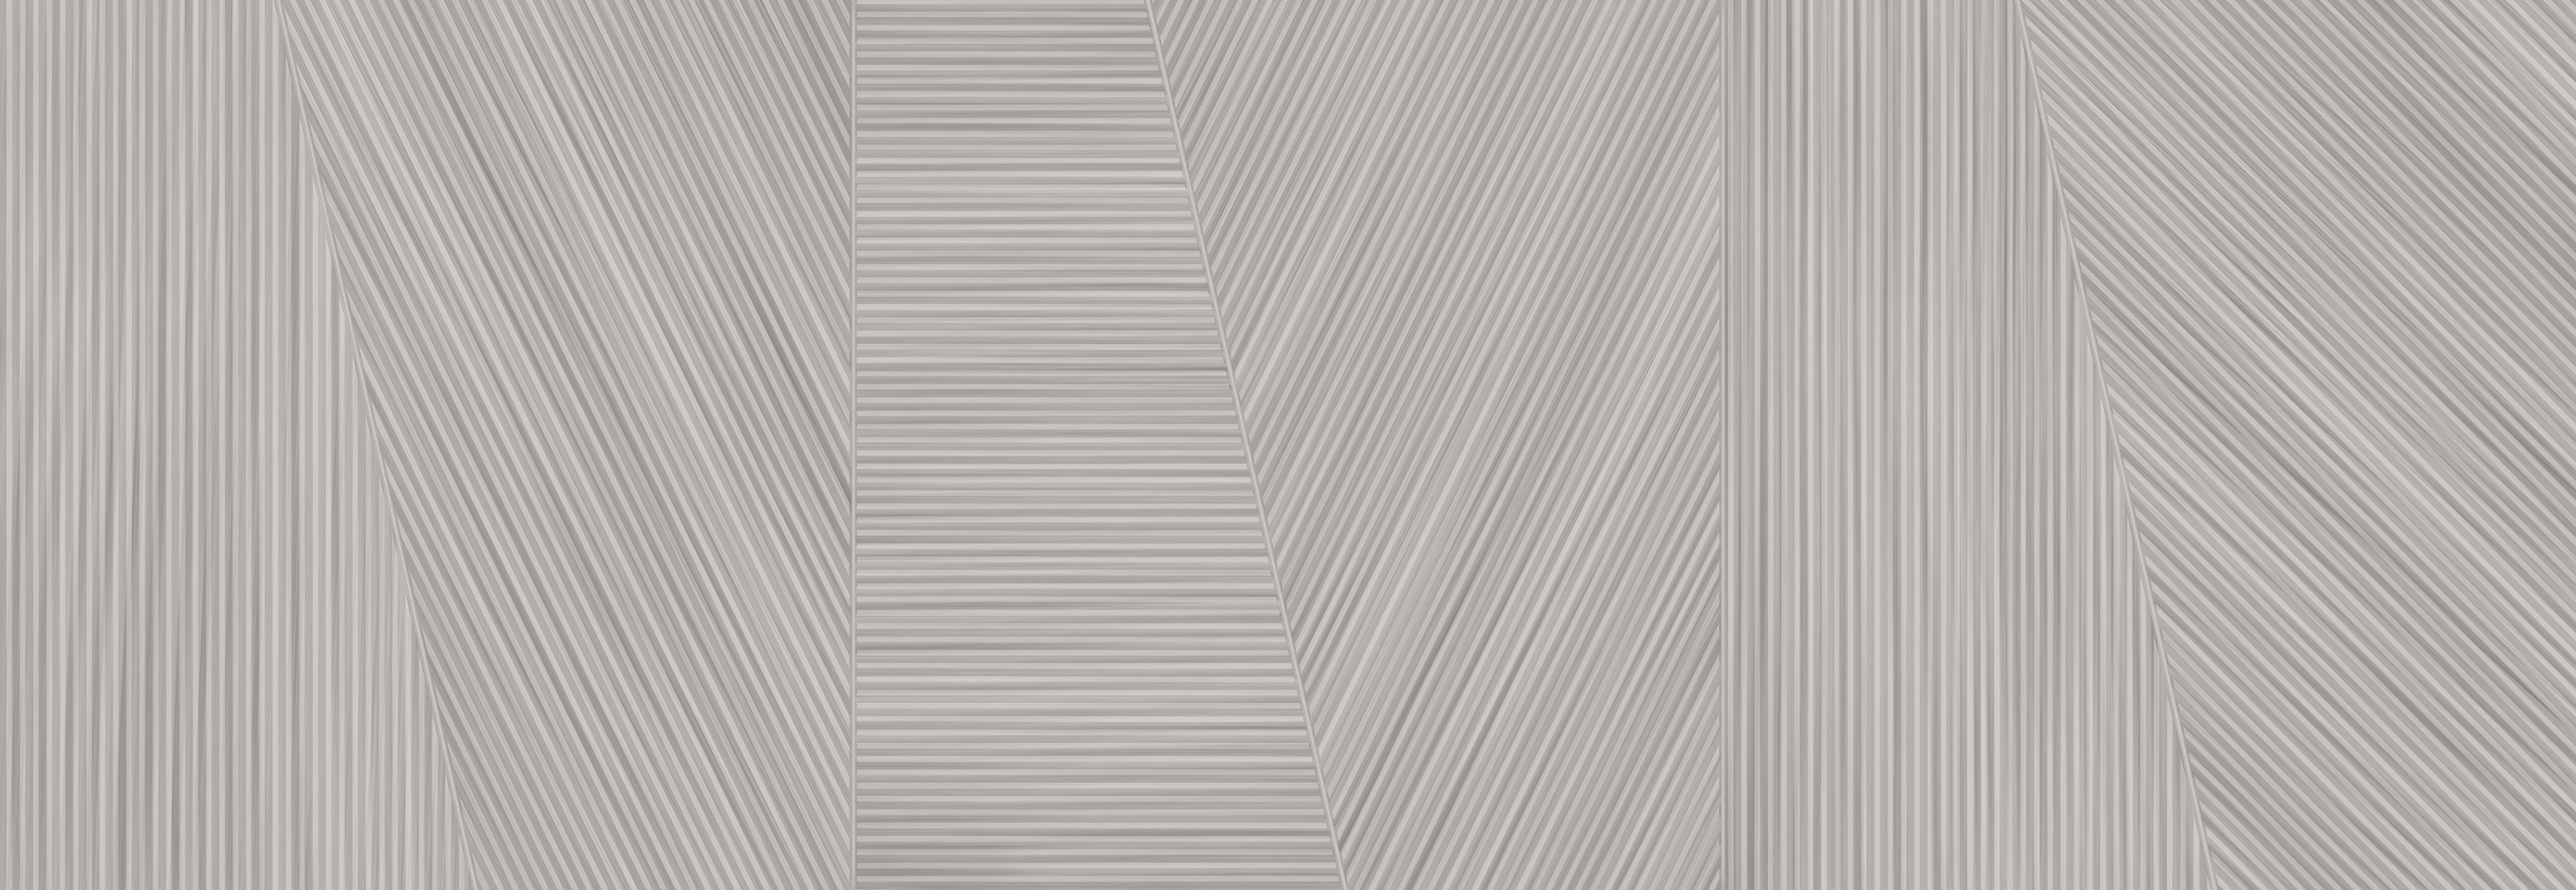 91090622 Керамическая плитка Legno Legno Grigio 24.2x70см 1.19 м² цвет серый STLM-0478854 КЕРЛАЙФ